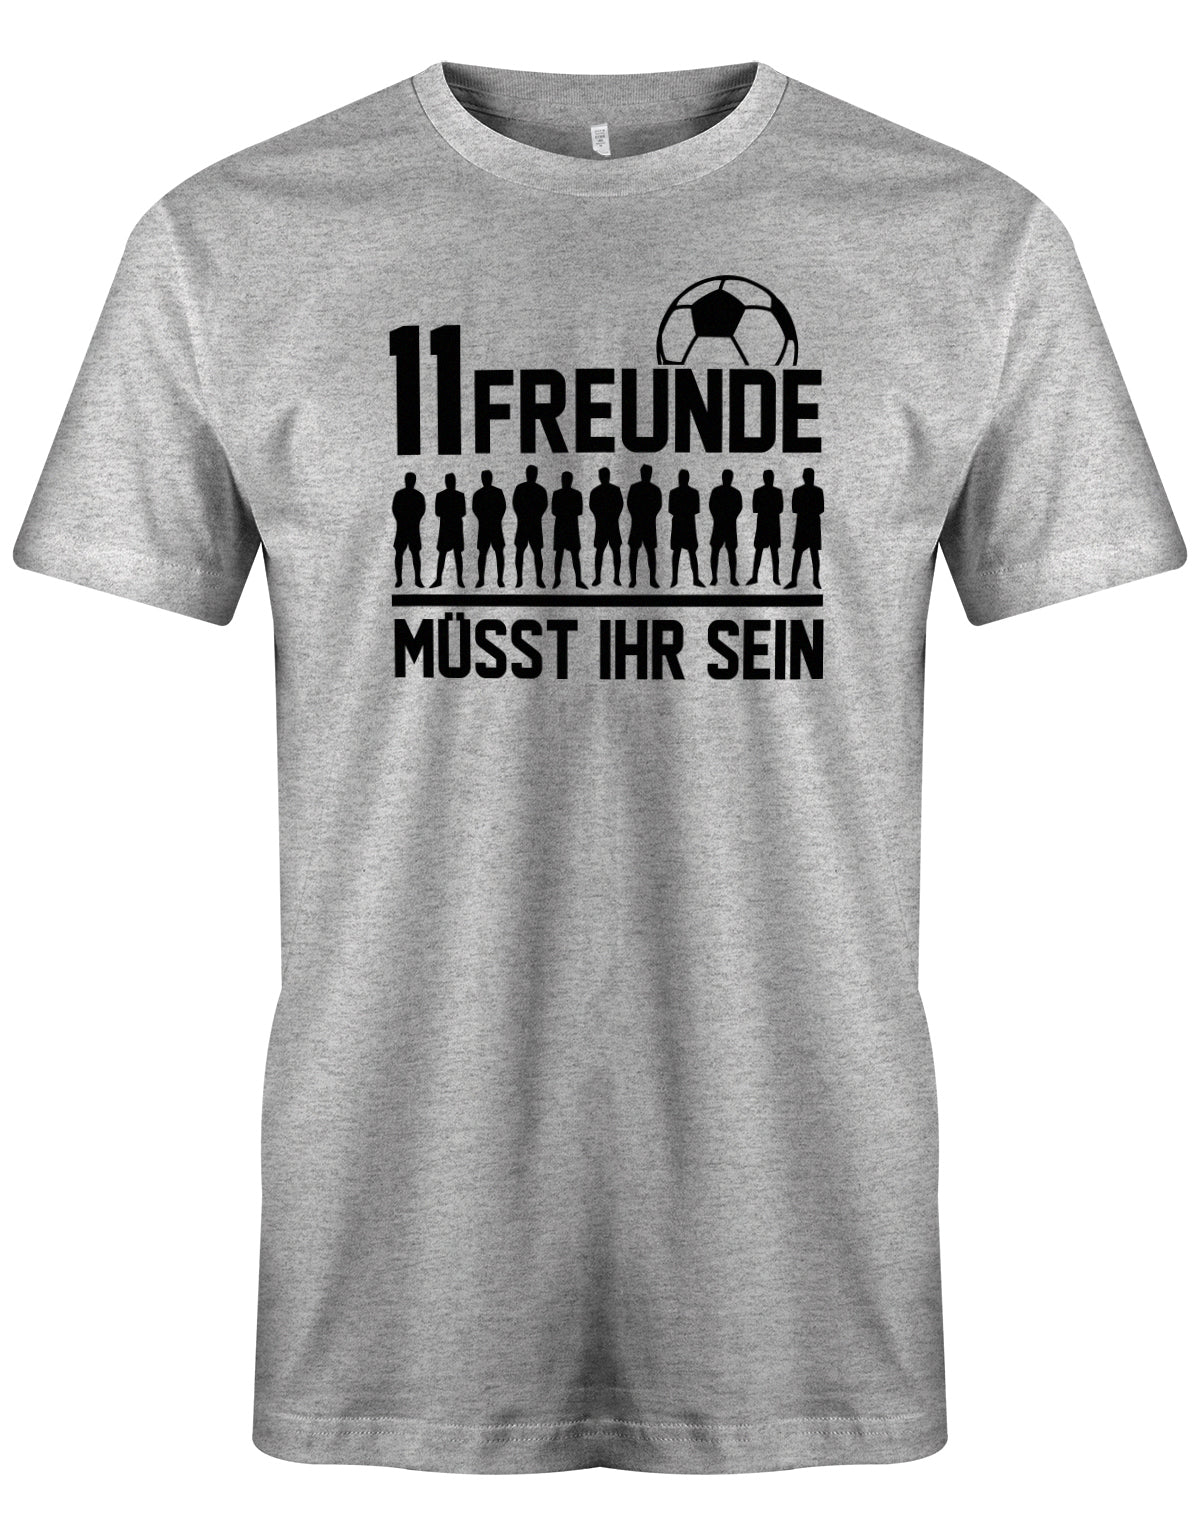 11 Freunde müsst ihr sein - Fußball - Herren T-Shirt Grau